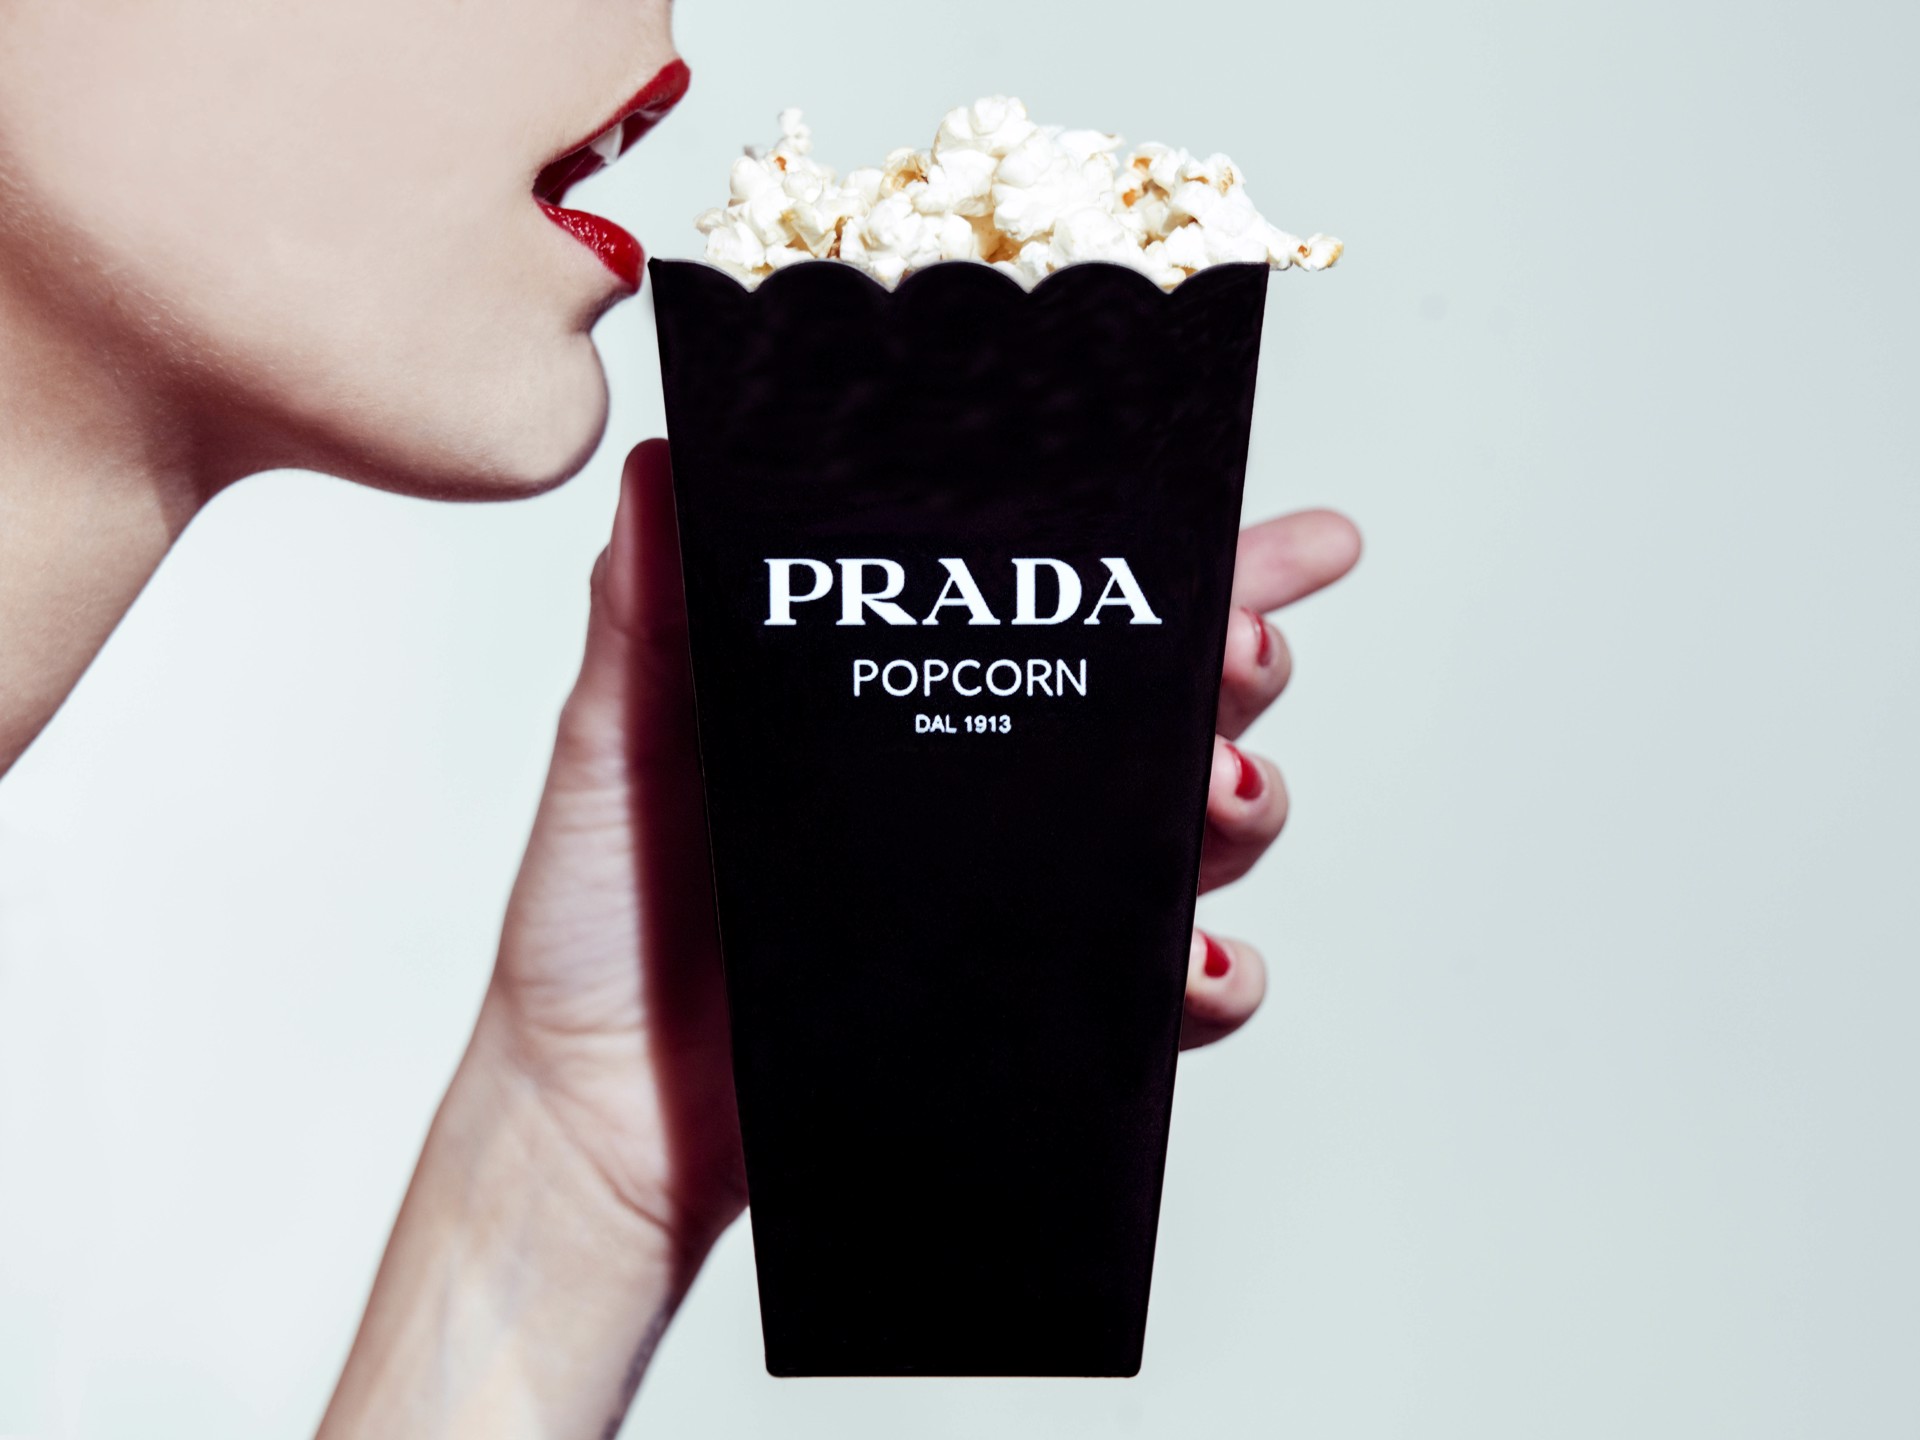 Prada Popcorn (AP) by Tyler Shields